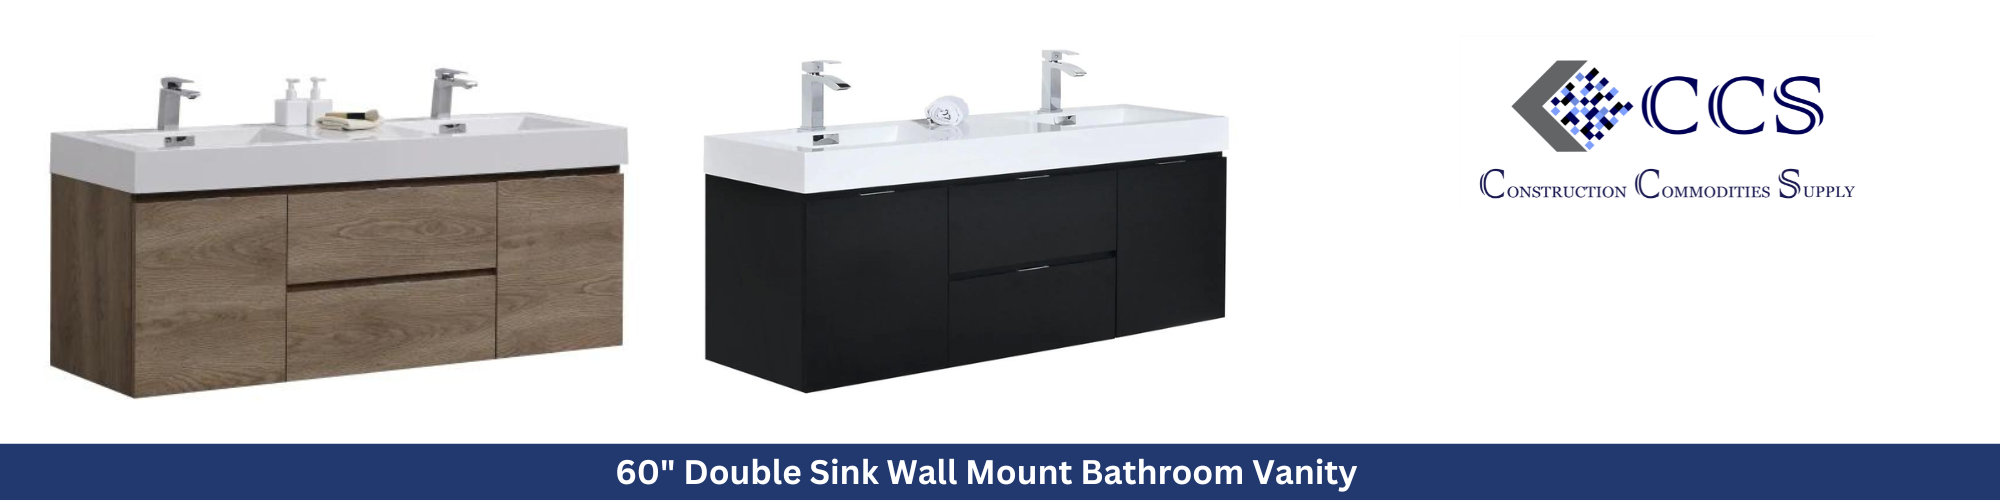 60" Double Sink Wall Mount Bathroom Vanity